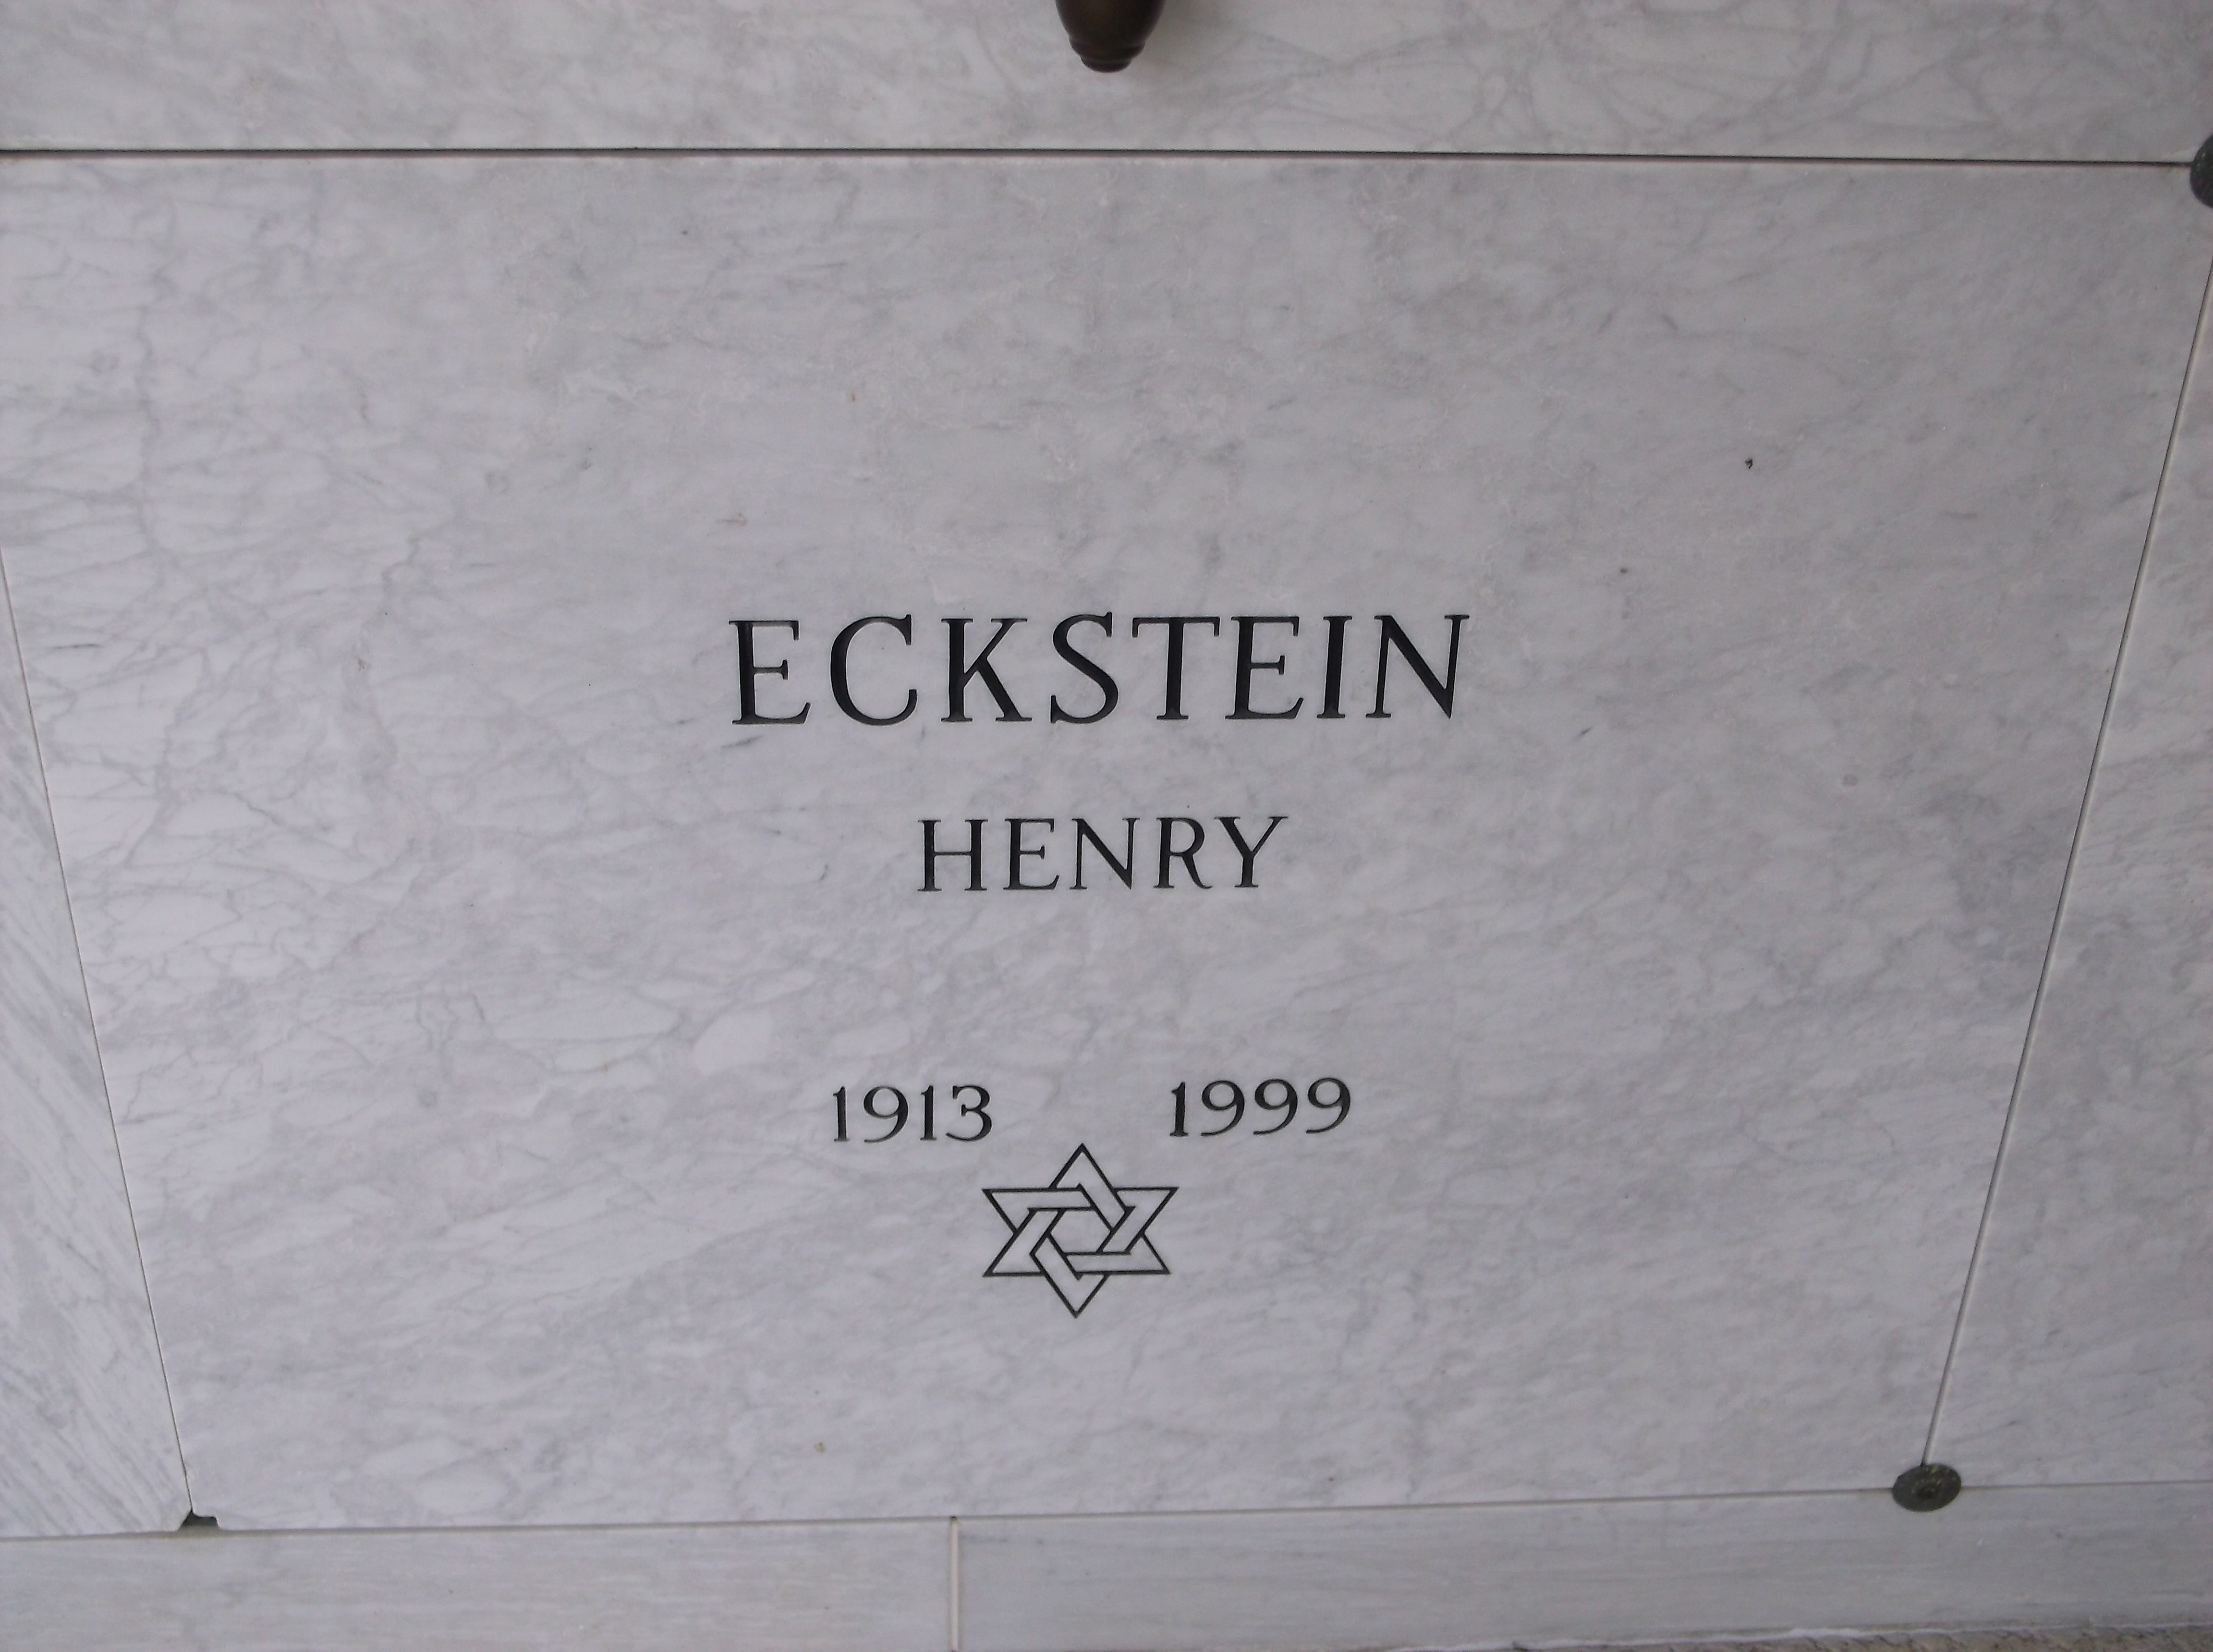 Henry Eckstein